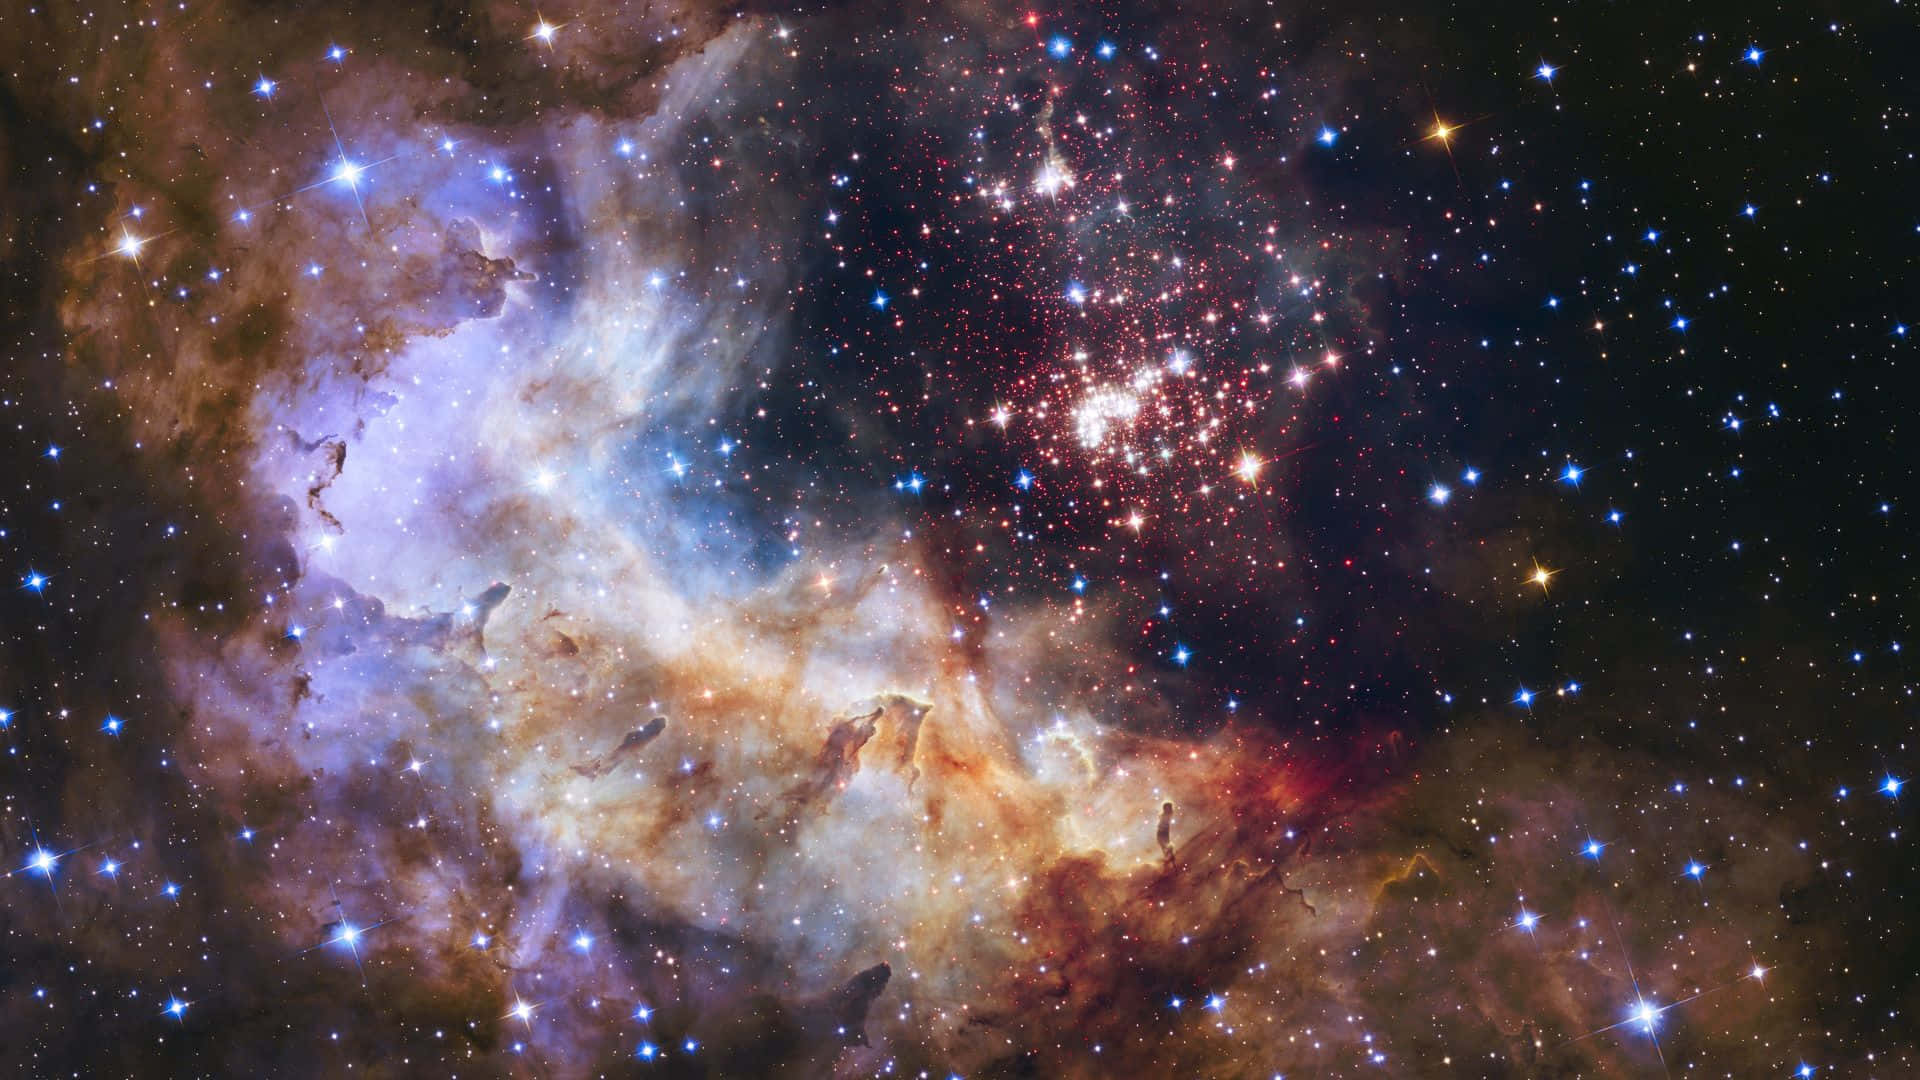 Lamajestuosidad De Una Nebulosa Galáctica Impresiona En Este Impresionante Fondo De Pantalla Celestial.